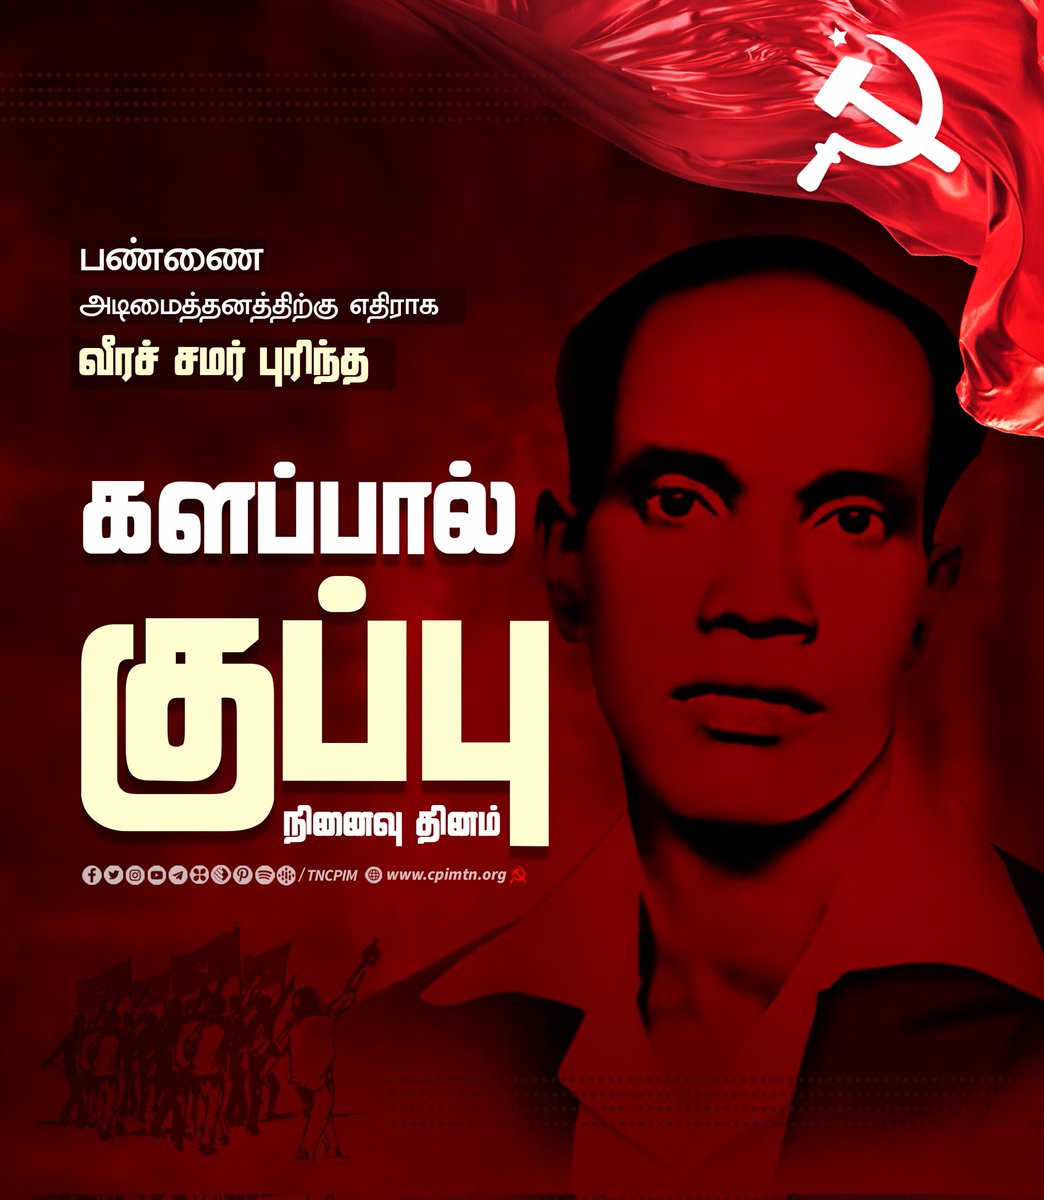 பண்ணை அடிமை முறைக்கு எதிராக வீரச் சமர் புரிந்த தியாகி களப்பால் குப்பு சிறையில் விஷம் வைத்து கொல்லப்பட்ட நாள் (18 ஏப்ரல் 1948) #KalappaalKuppu #Martyrs #CommunistMartyr